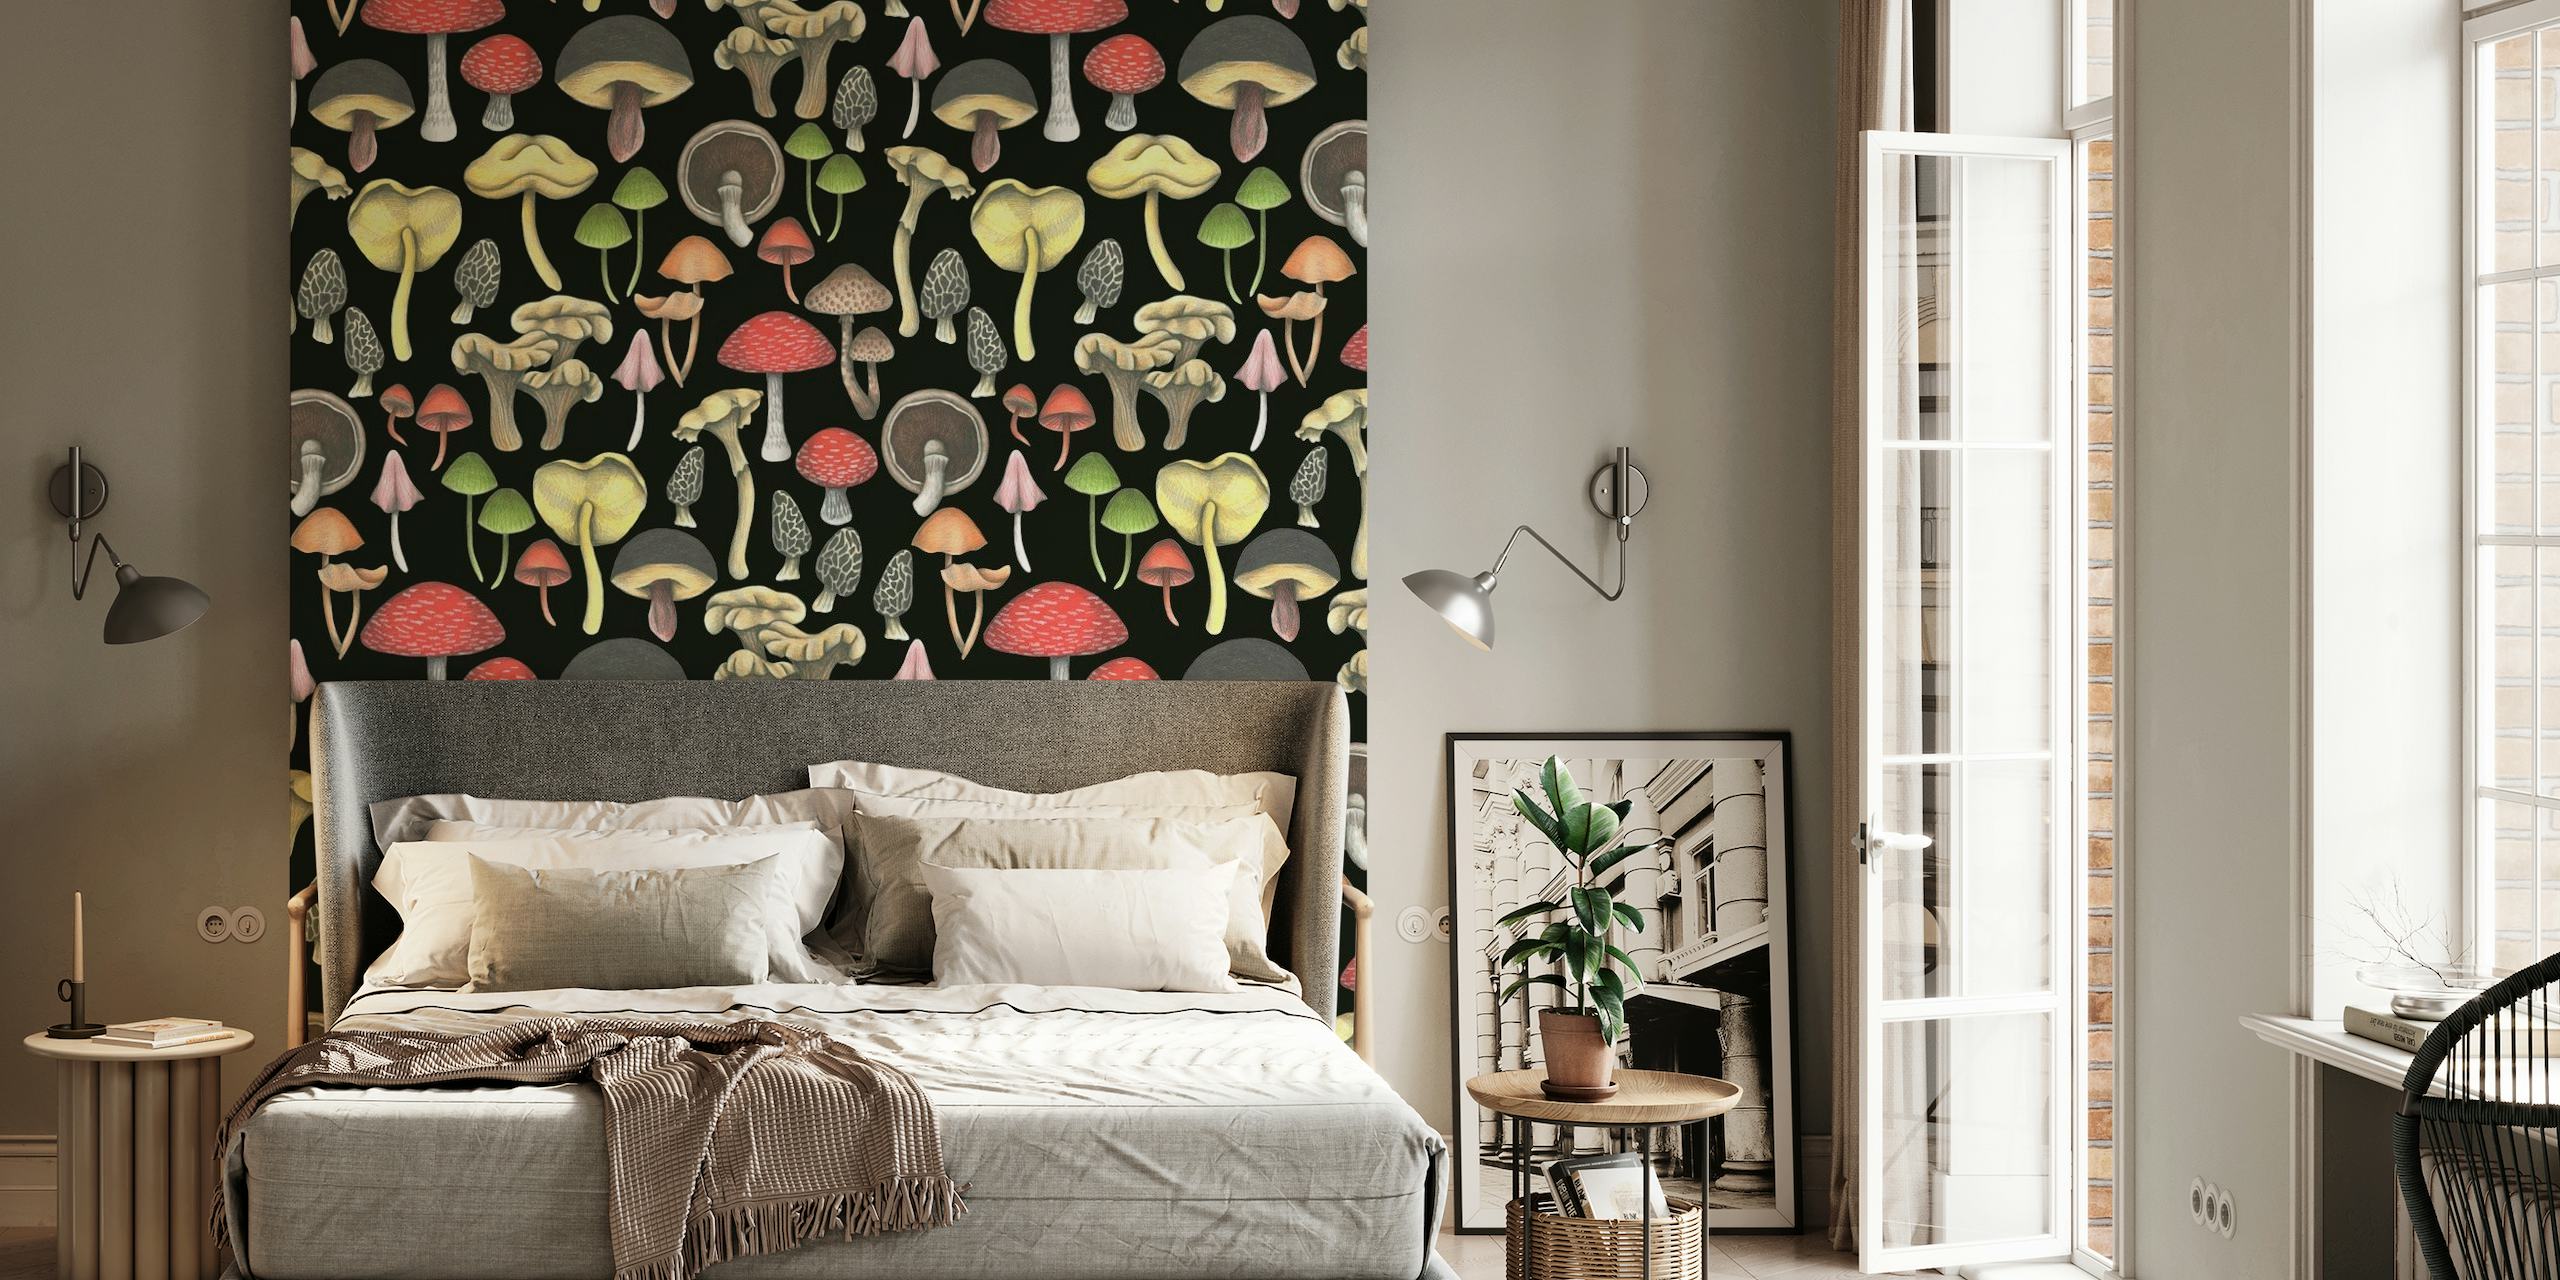 Black Mushroom Wallpaper featuring vibrant Wild Mushrooms Fantasy design